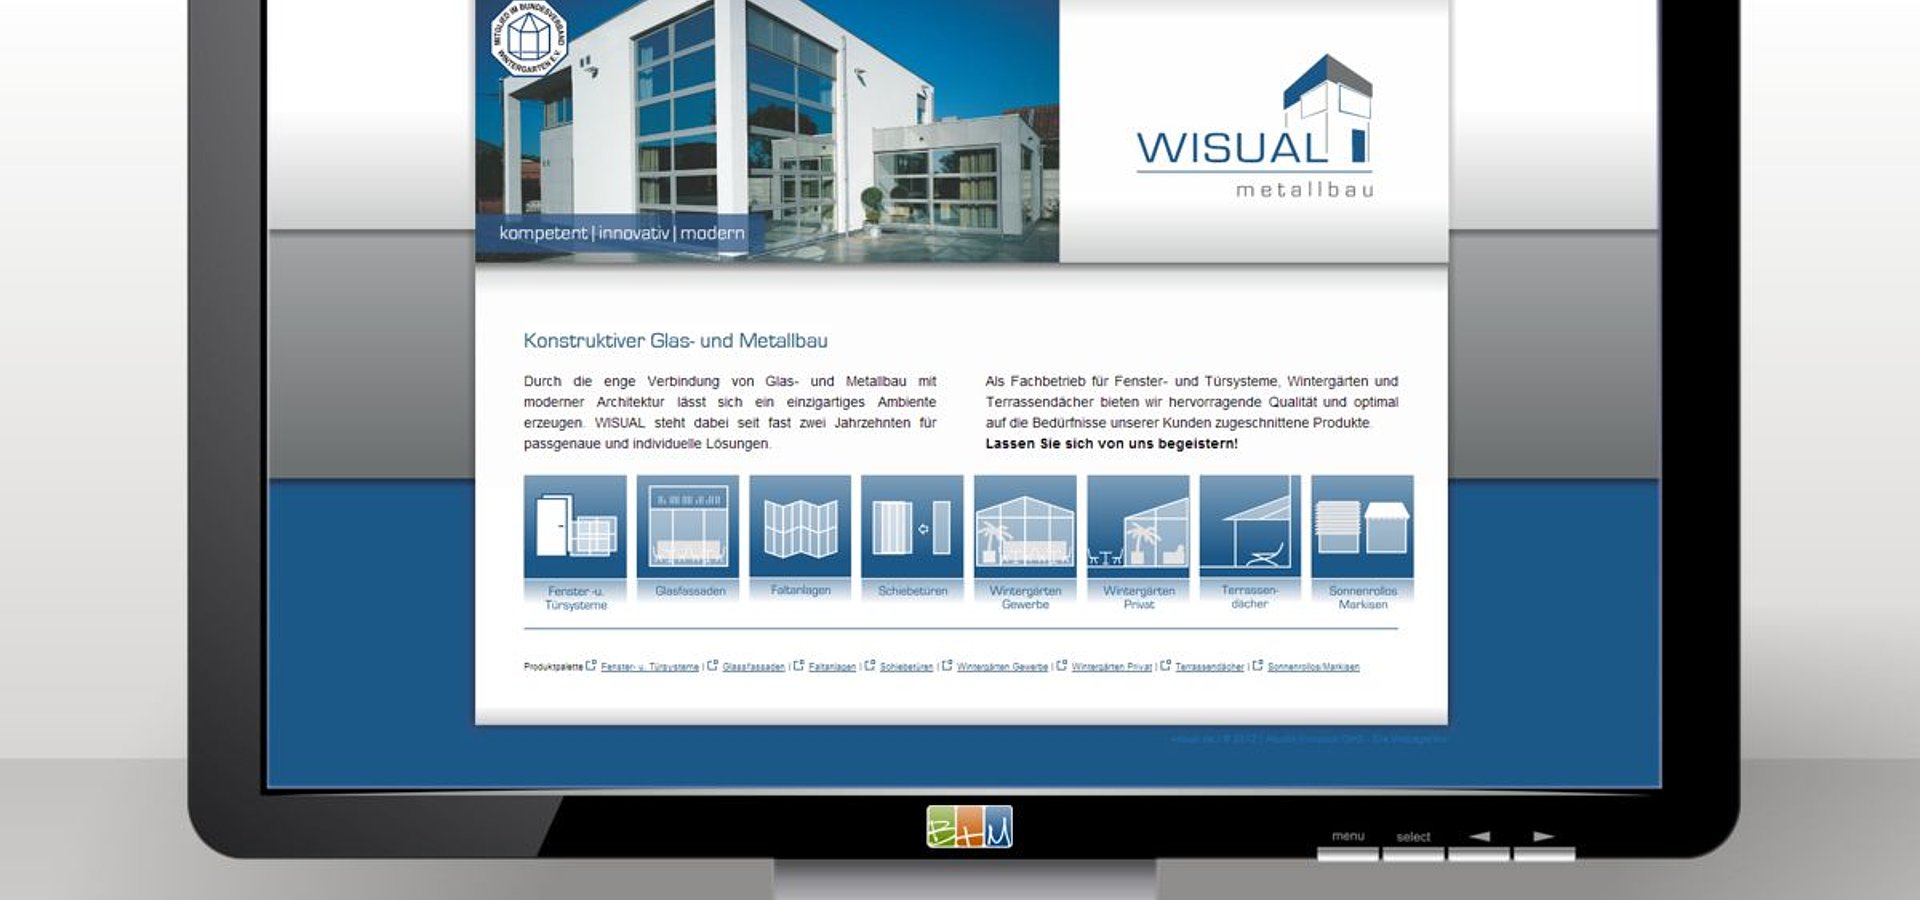 Webdesign: Webdesign mit TYPO3 für WISUAL Metallbau GmbH / 2010